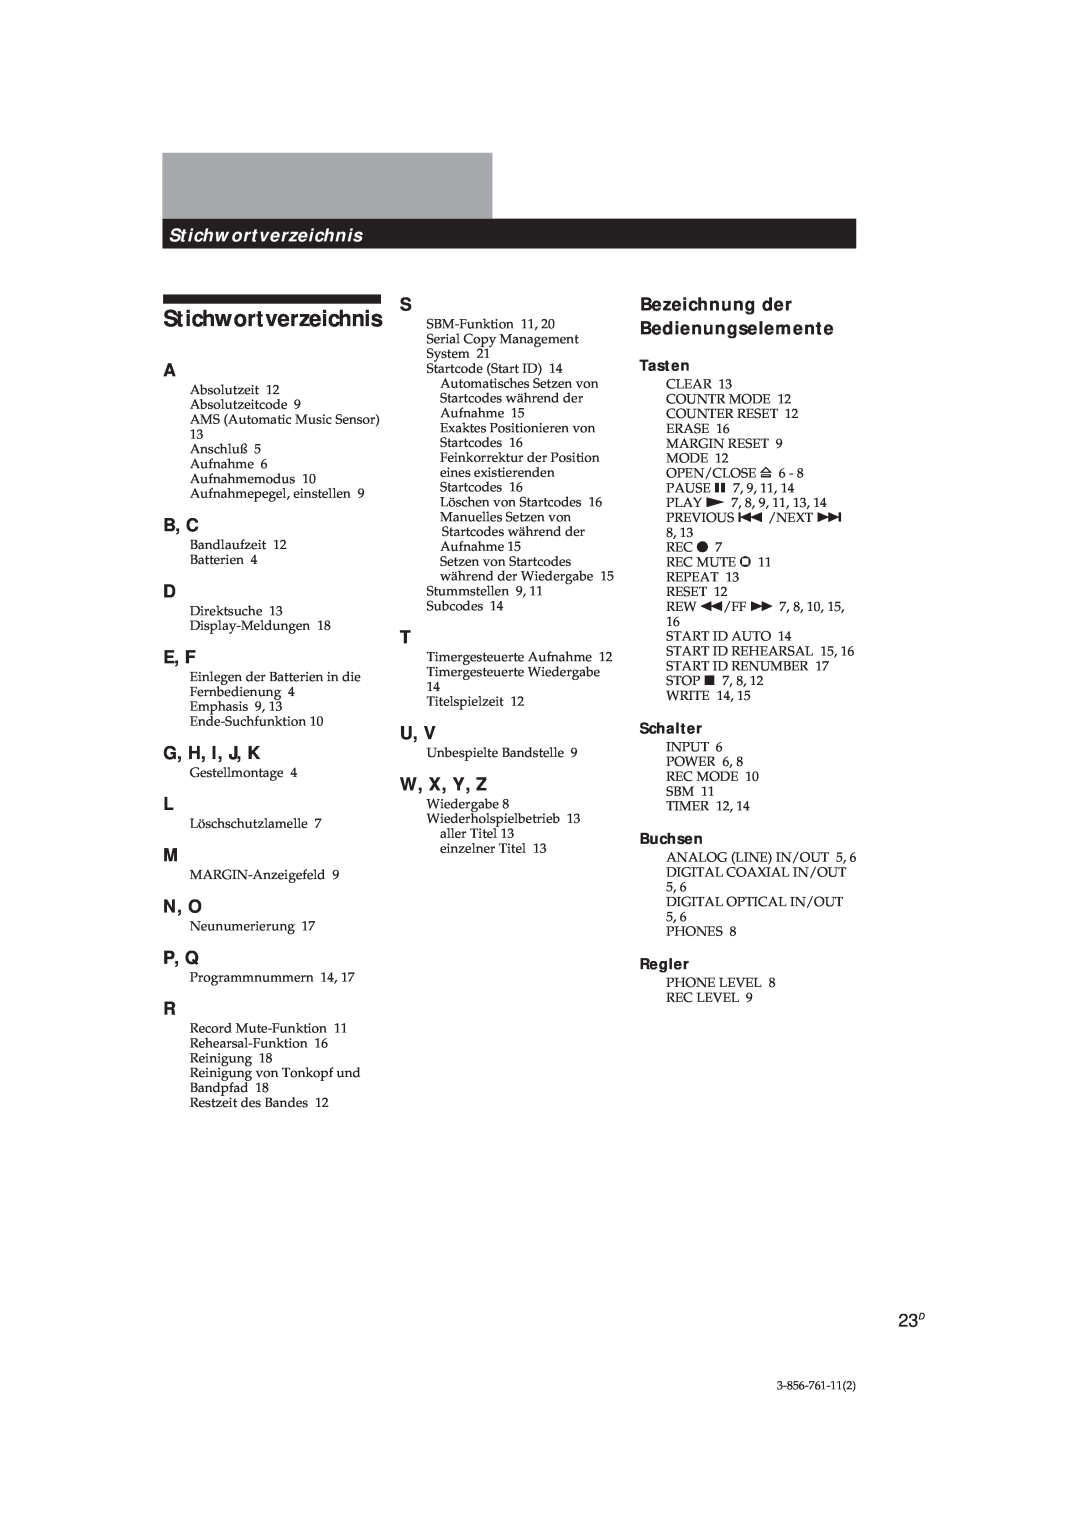 Sony DTC-A6 Stichwortverzeichnis, B, C, E, F, G, H, I, J, K, W, X, Y, Z, Bezeichnung der Bedienungselemente, N, O, P, Q 